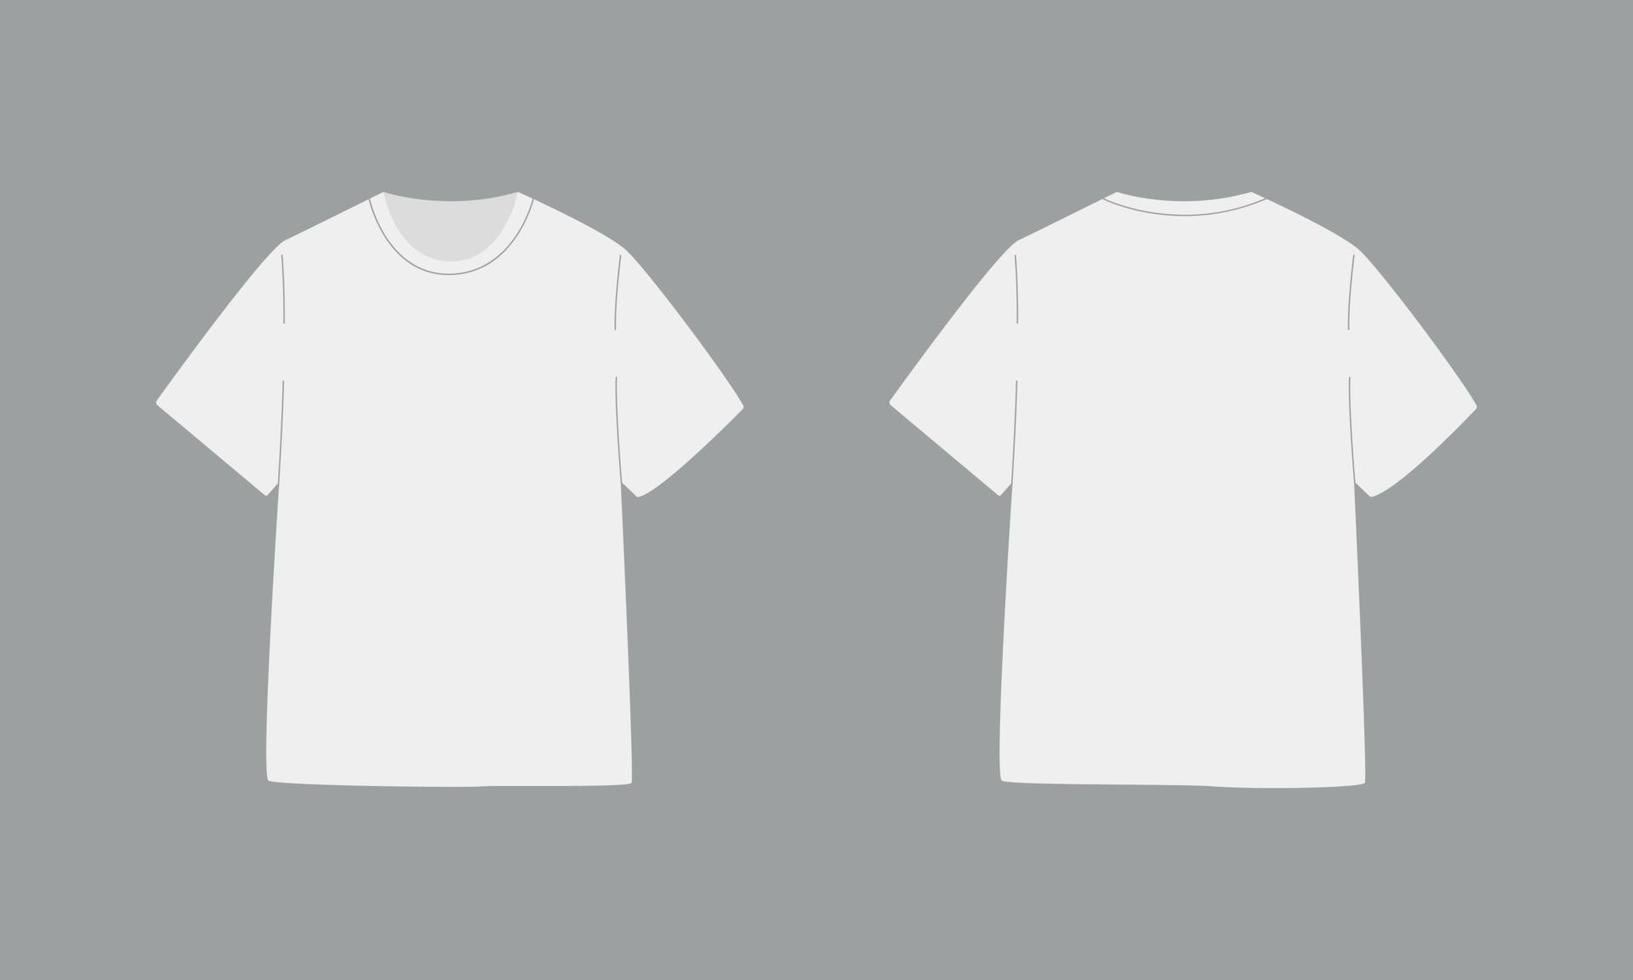 wit t-shirt met korte mouw. basismodel in voor- en achteraanzicht. sjabloon kleding op grijze achtergrond. vector illustratie